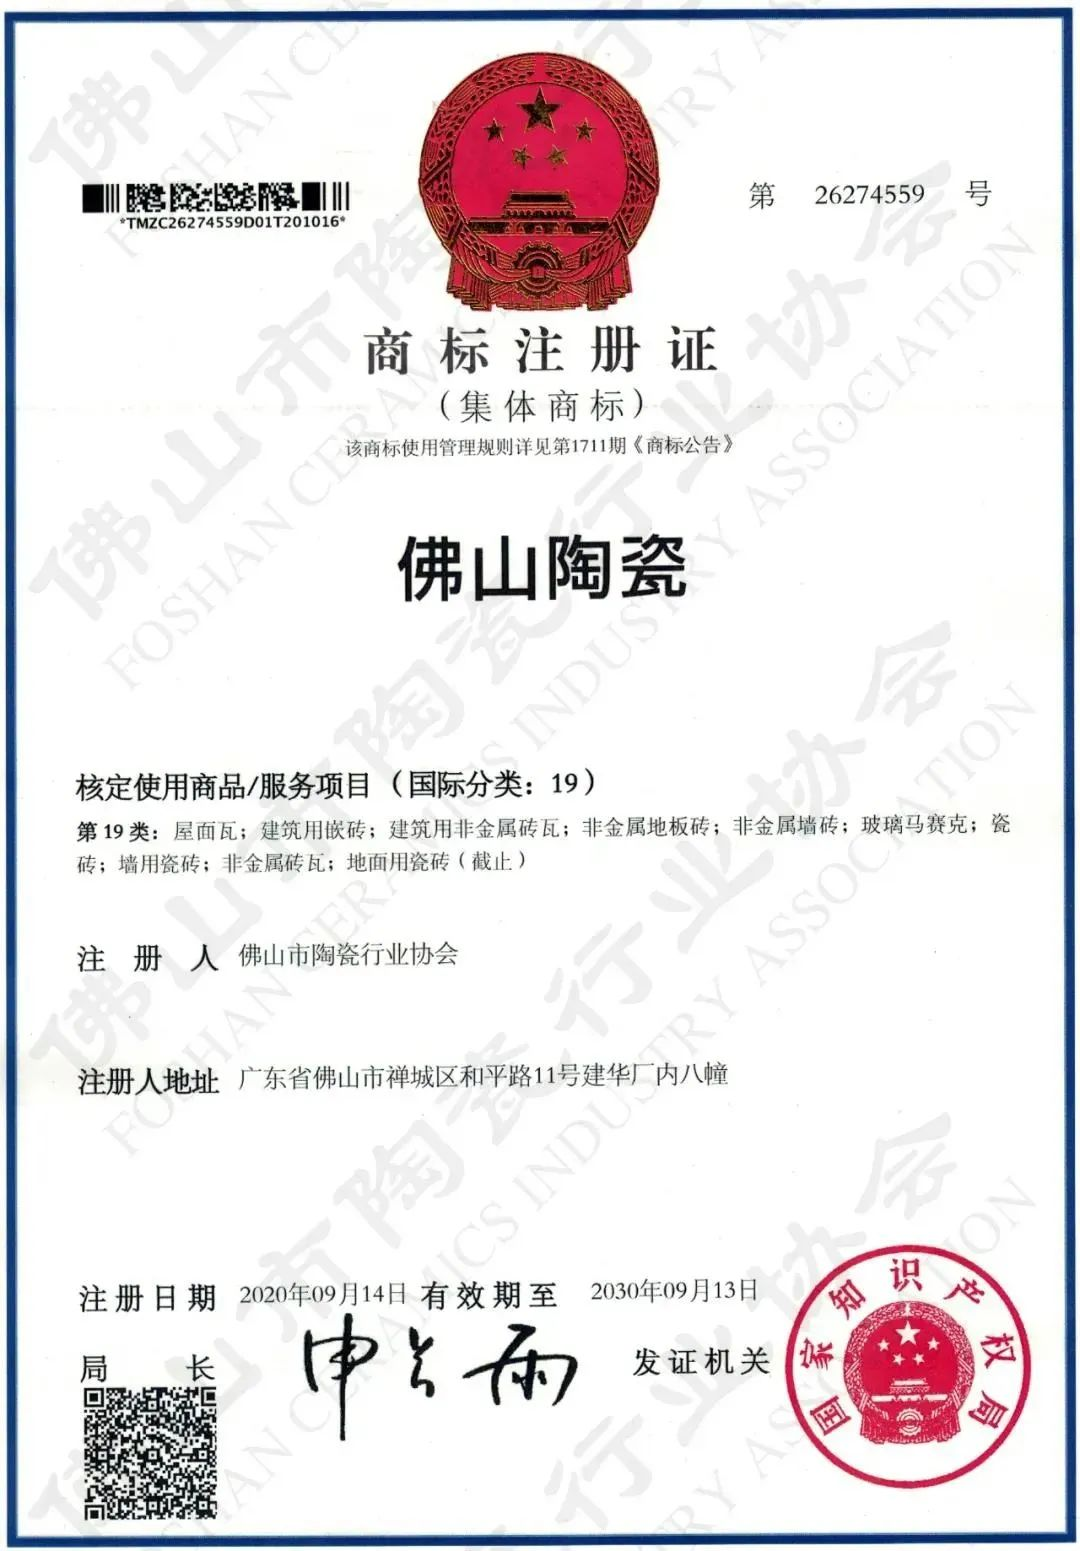 权威认证，品质保障 | 大将军瓷砖上榜首批“佛山陶瓷”集体商标授权品牌(图4)